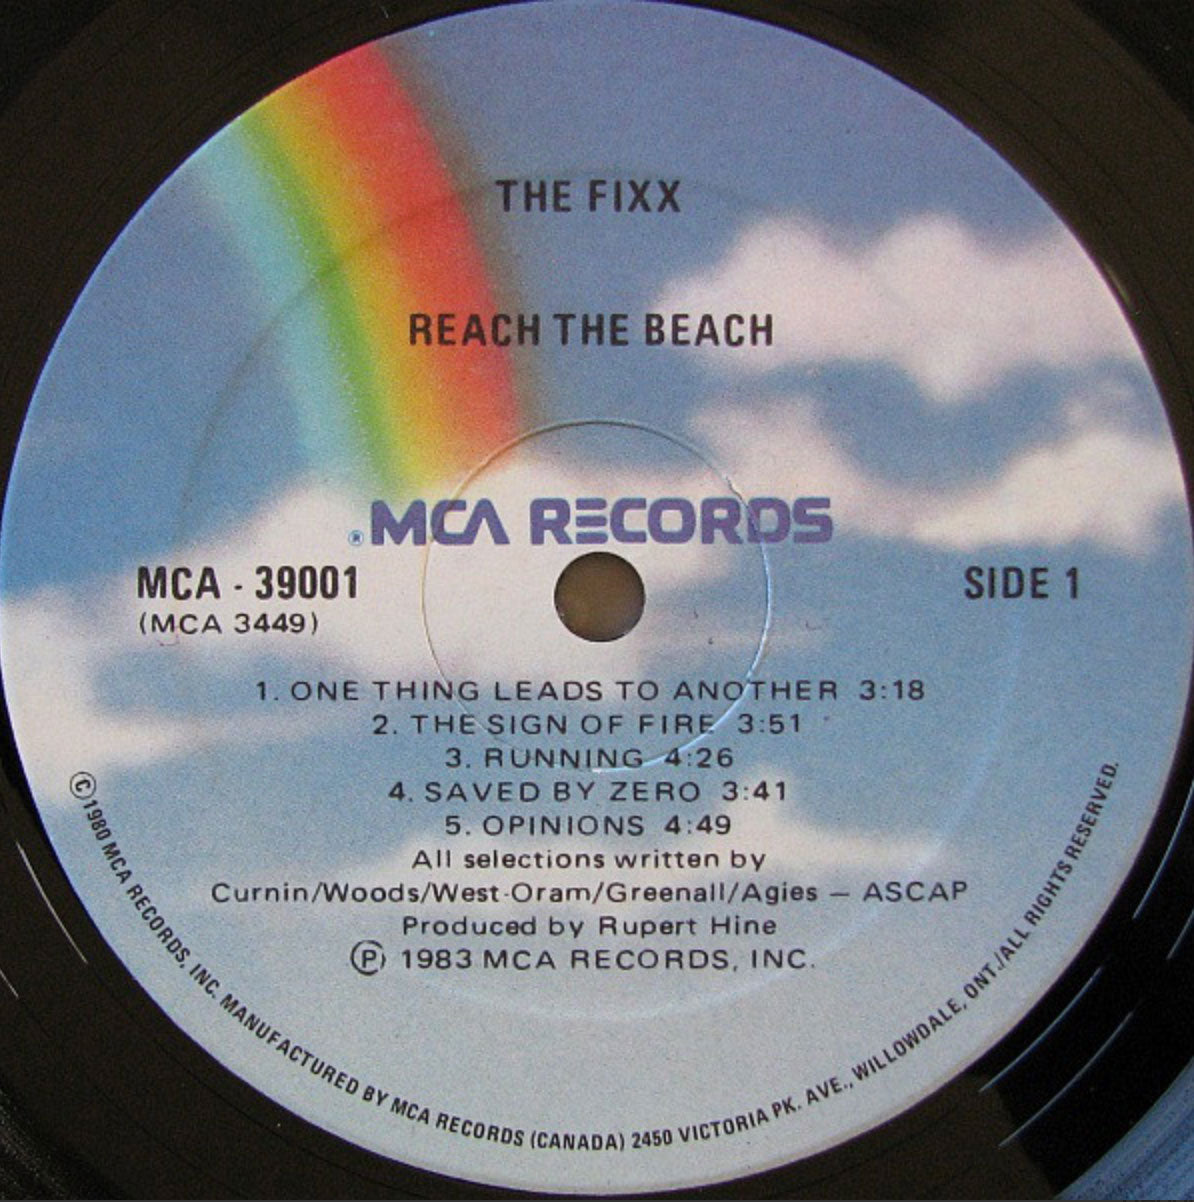 The Fixx – Reach The Beach - 1983